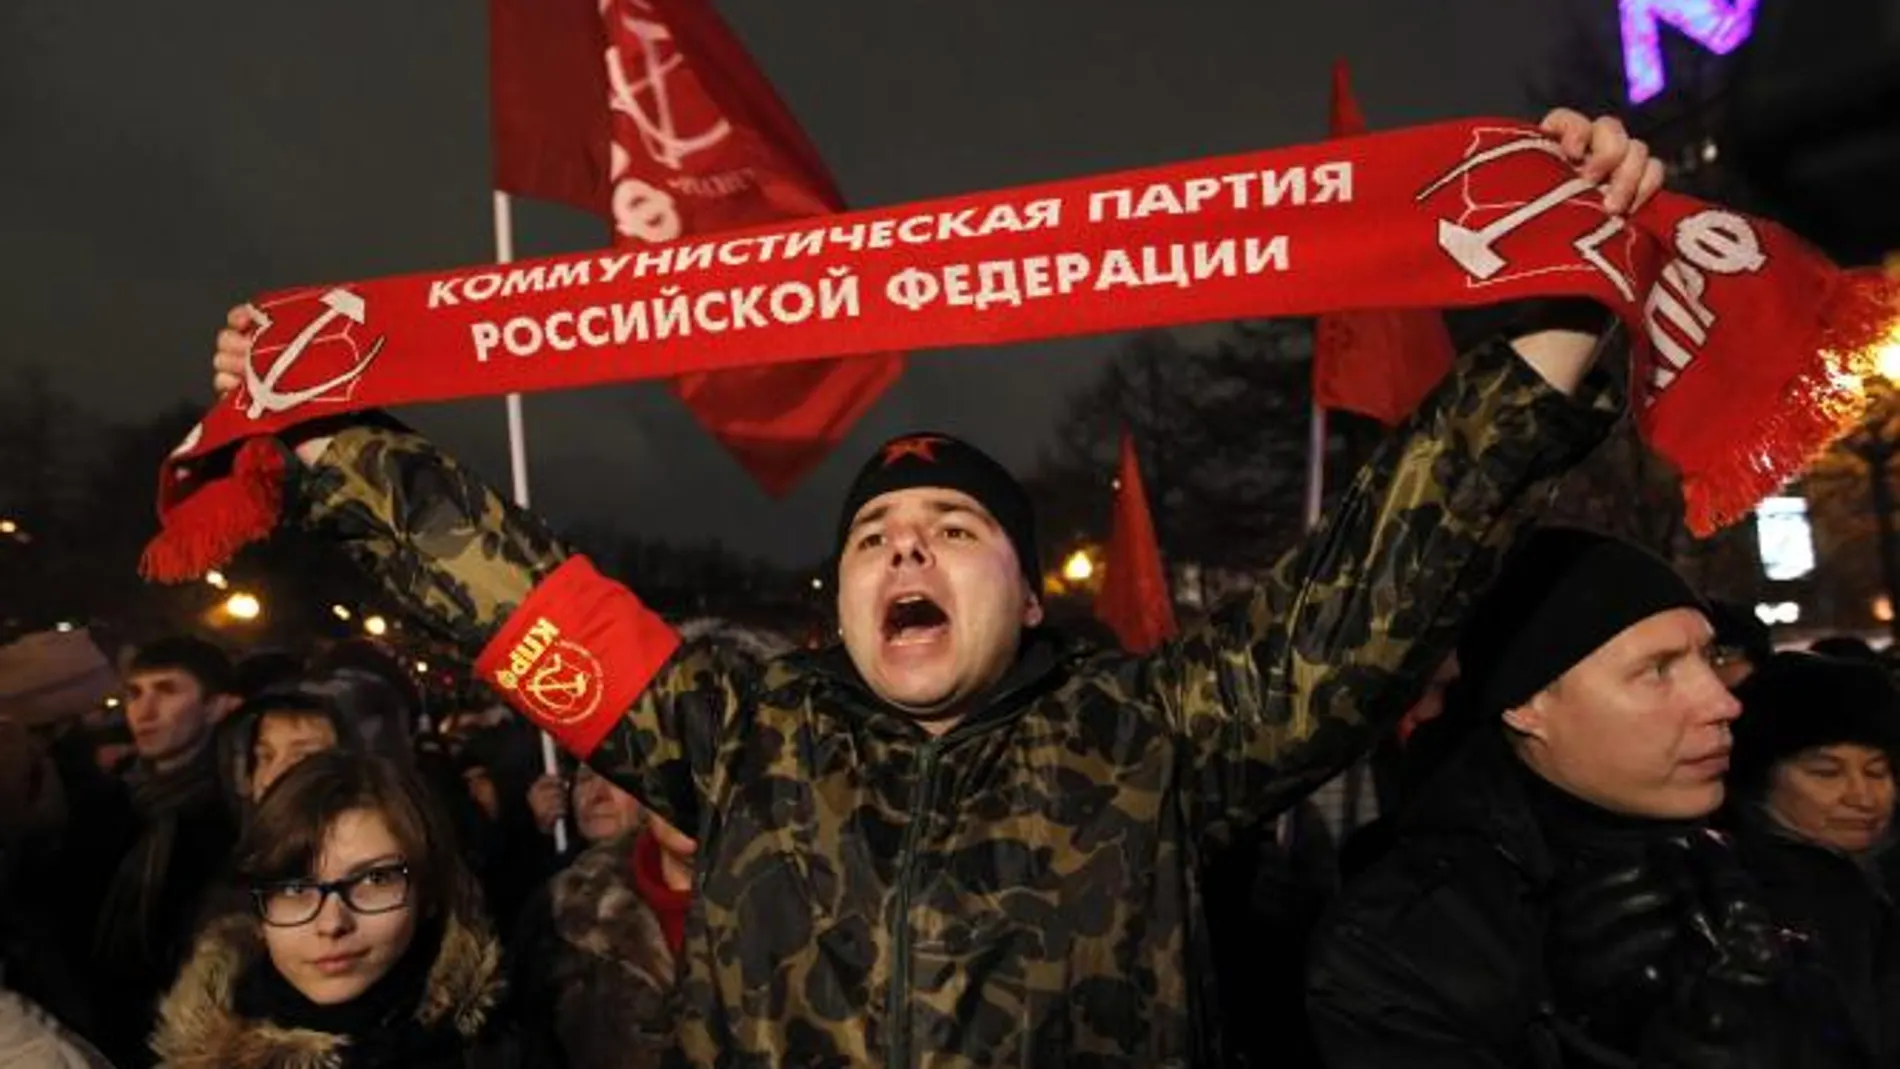 Un miembro del partido comunista ruso corea lemas durante una concentración en Moscú